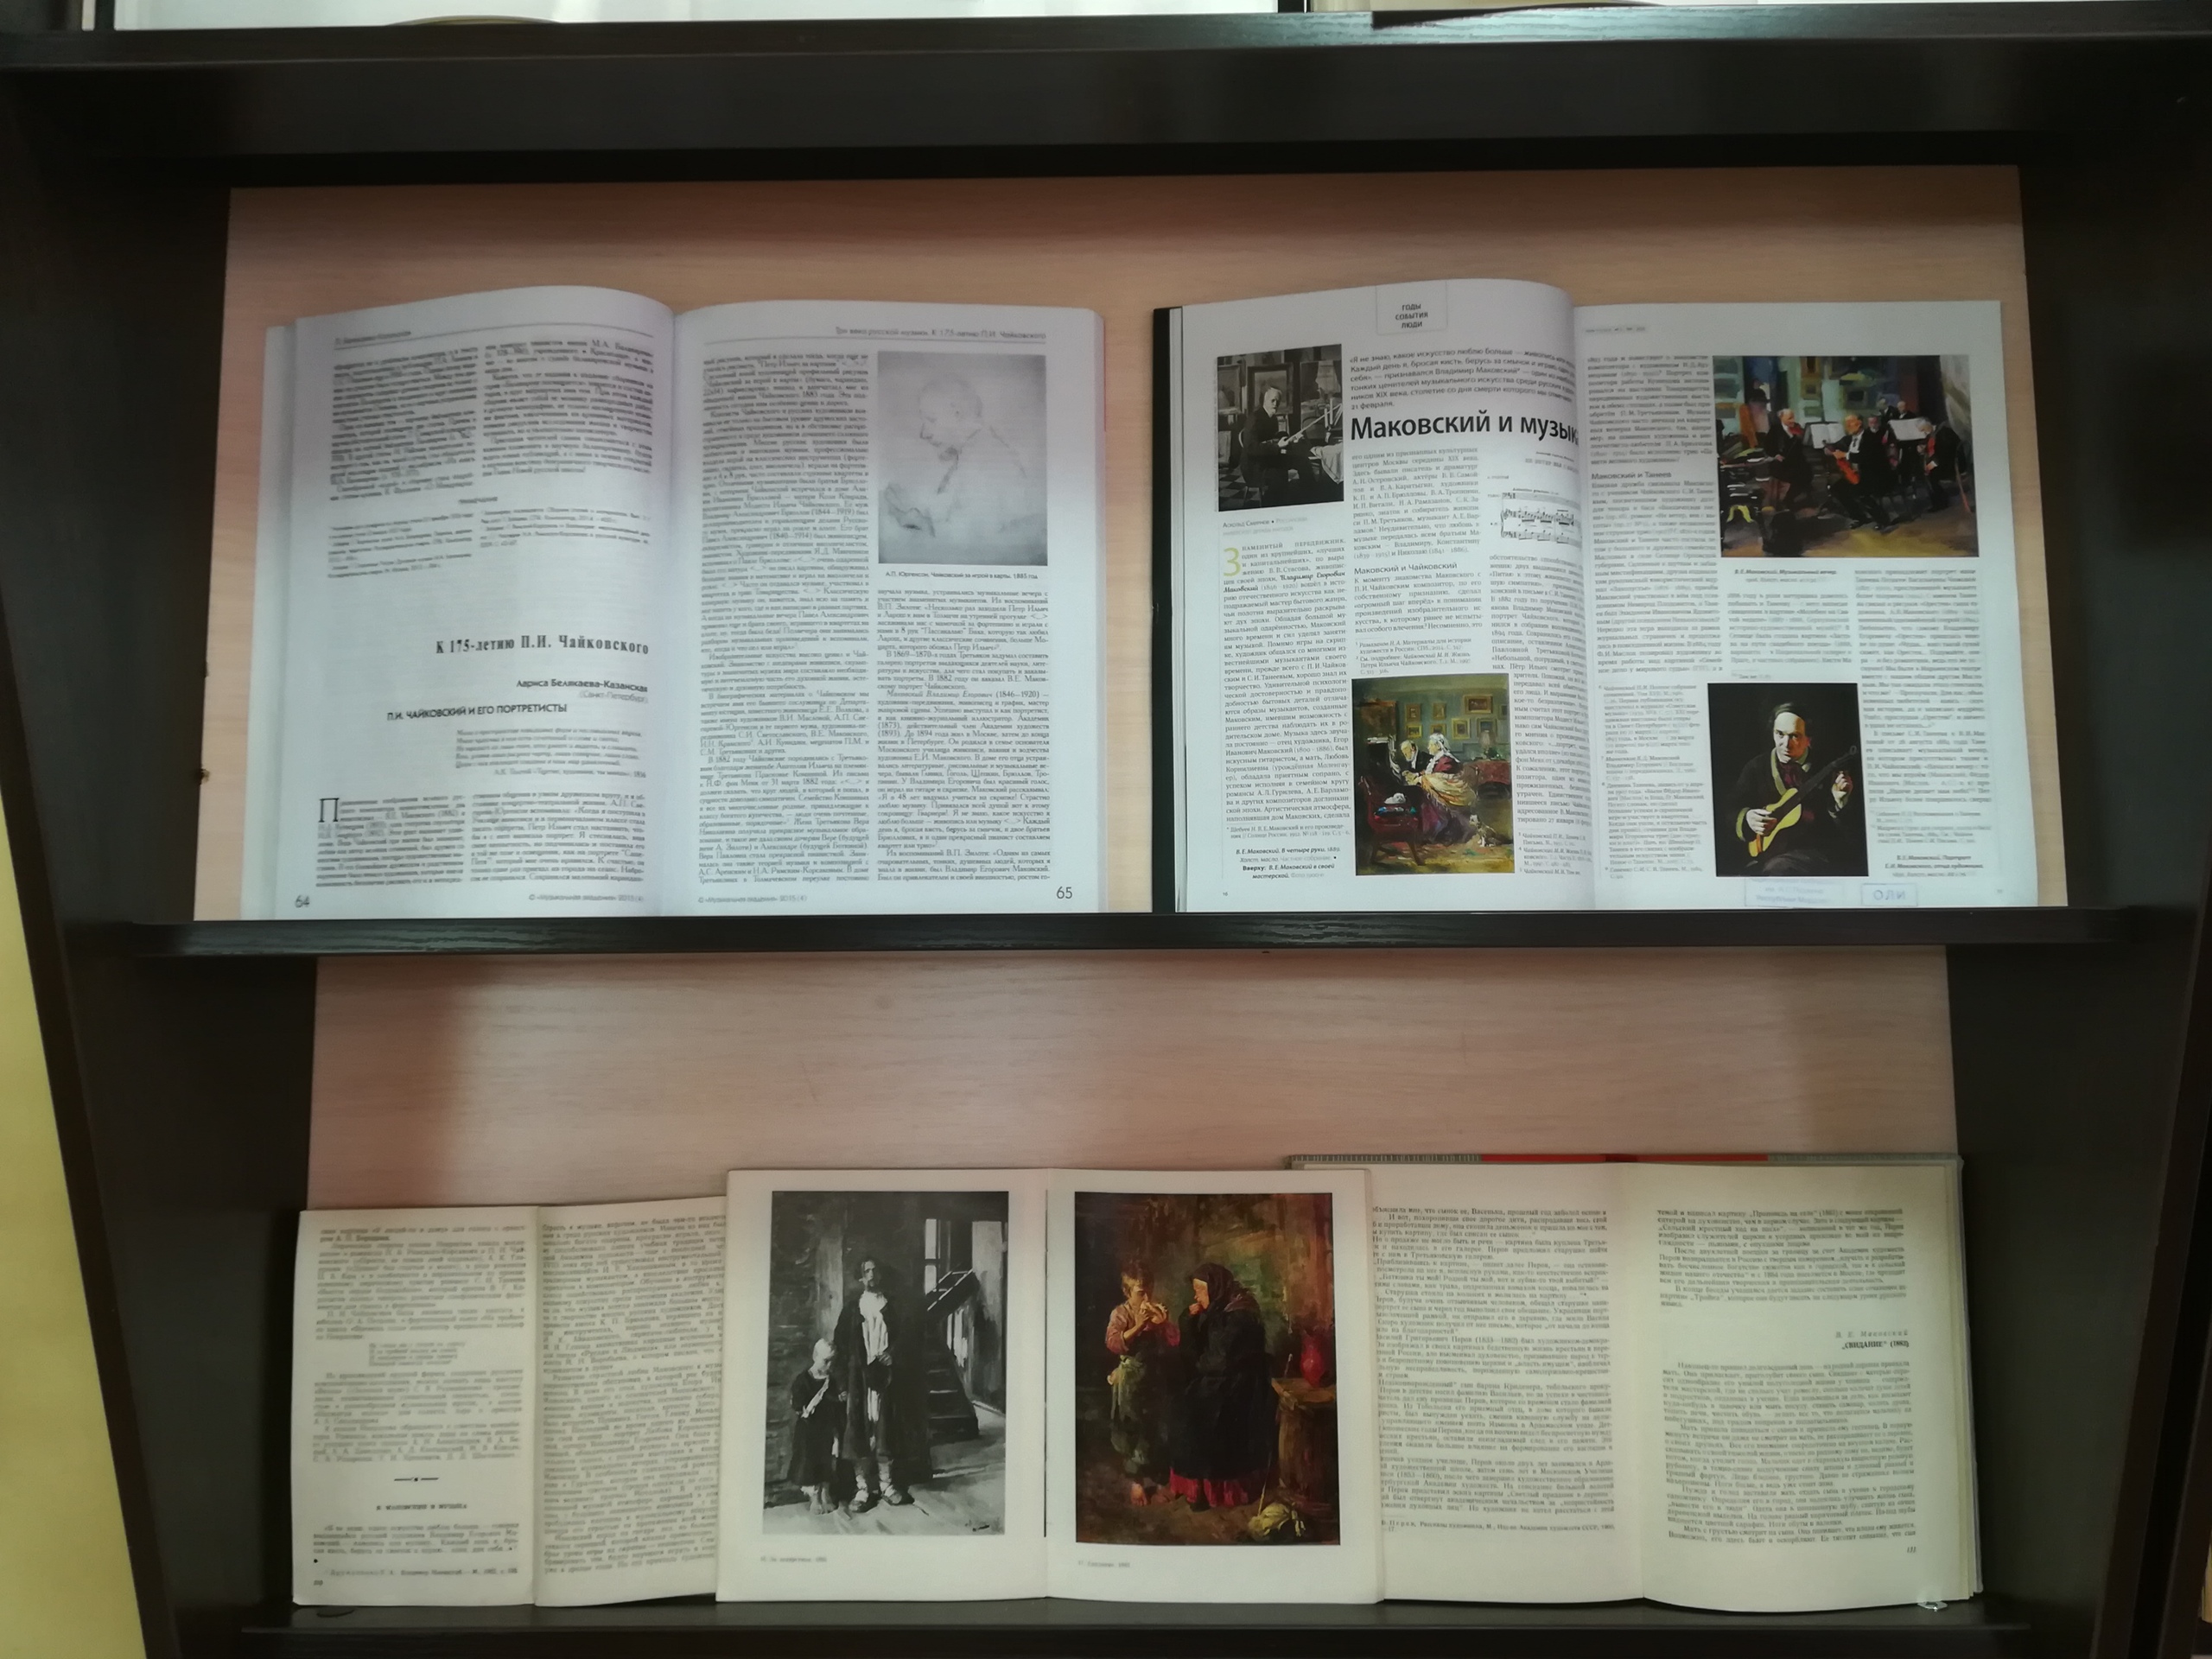 Мероприятие в библиотеке к юбилею Сергея Константиновича Маковского.